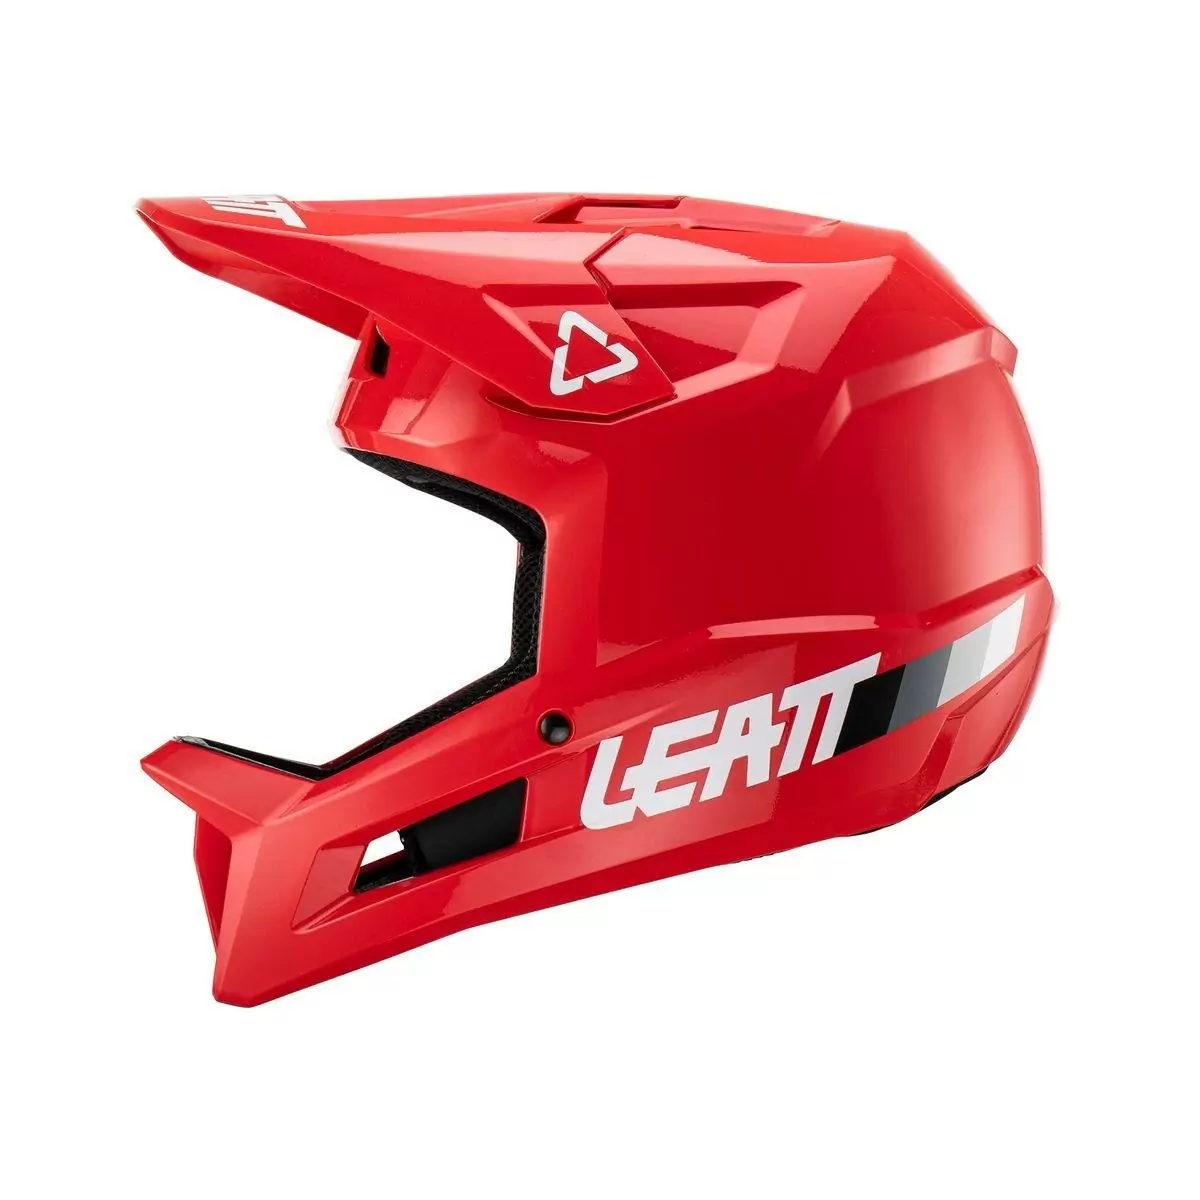 Gravity 1.0 MTB Fullface Helmet Red Size S (55-56cm) #1